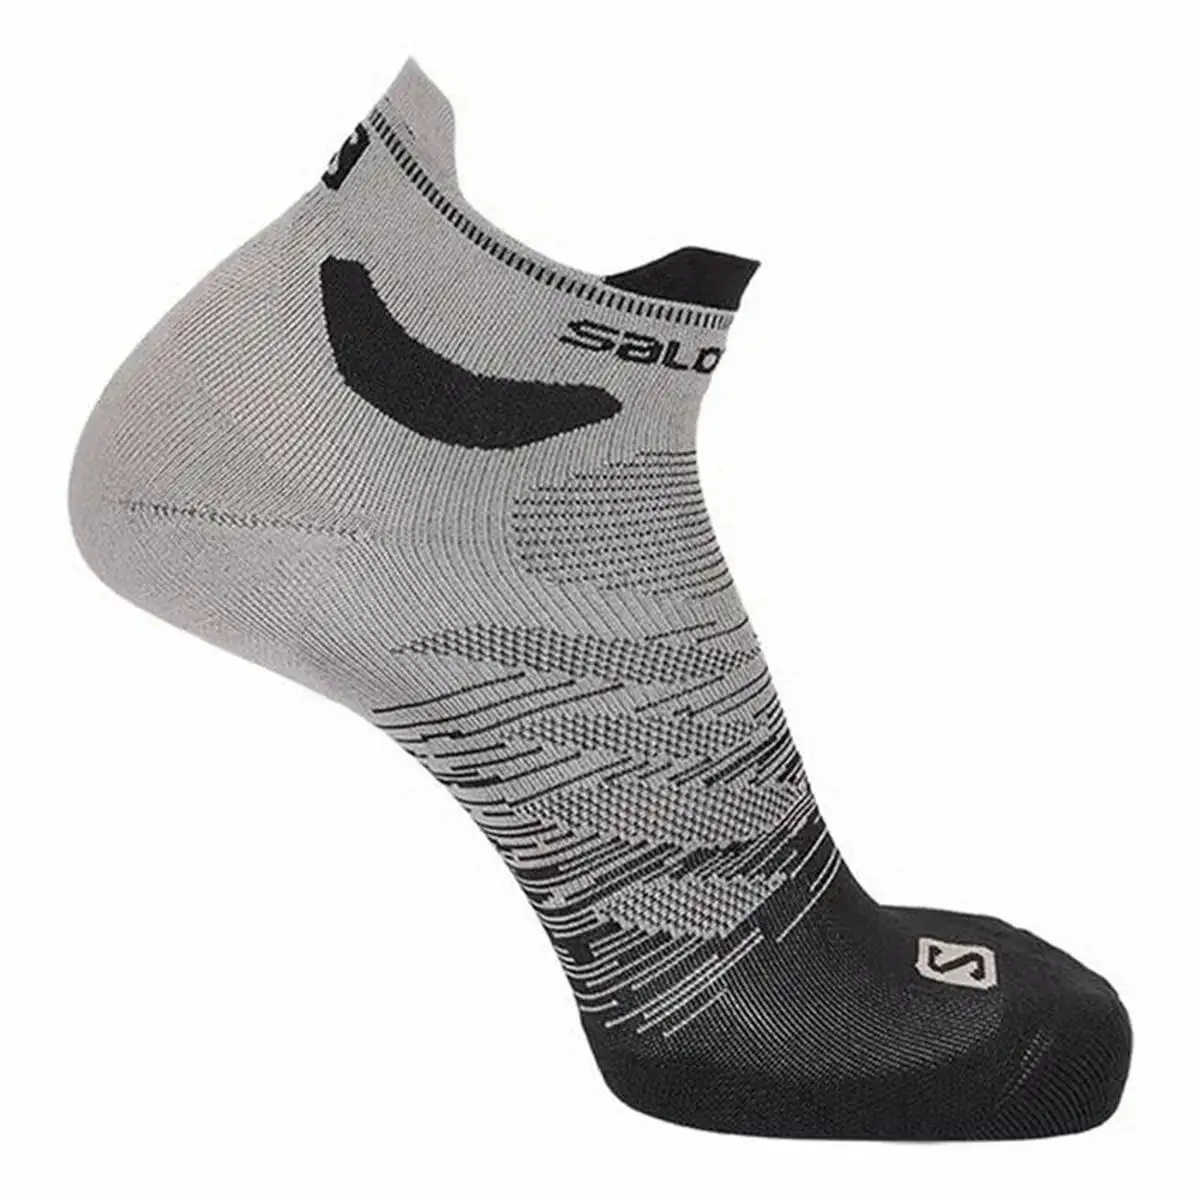 Chaussettes de sport salomon predict gris_3654. DIAYTAR SENEGAL - Où la Qualité et la Diversité Fusionnent. Explorez notre boutique en ligne pour découvrir une gamme variée de produits qui incarnent l'excellence et l'authenticité.